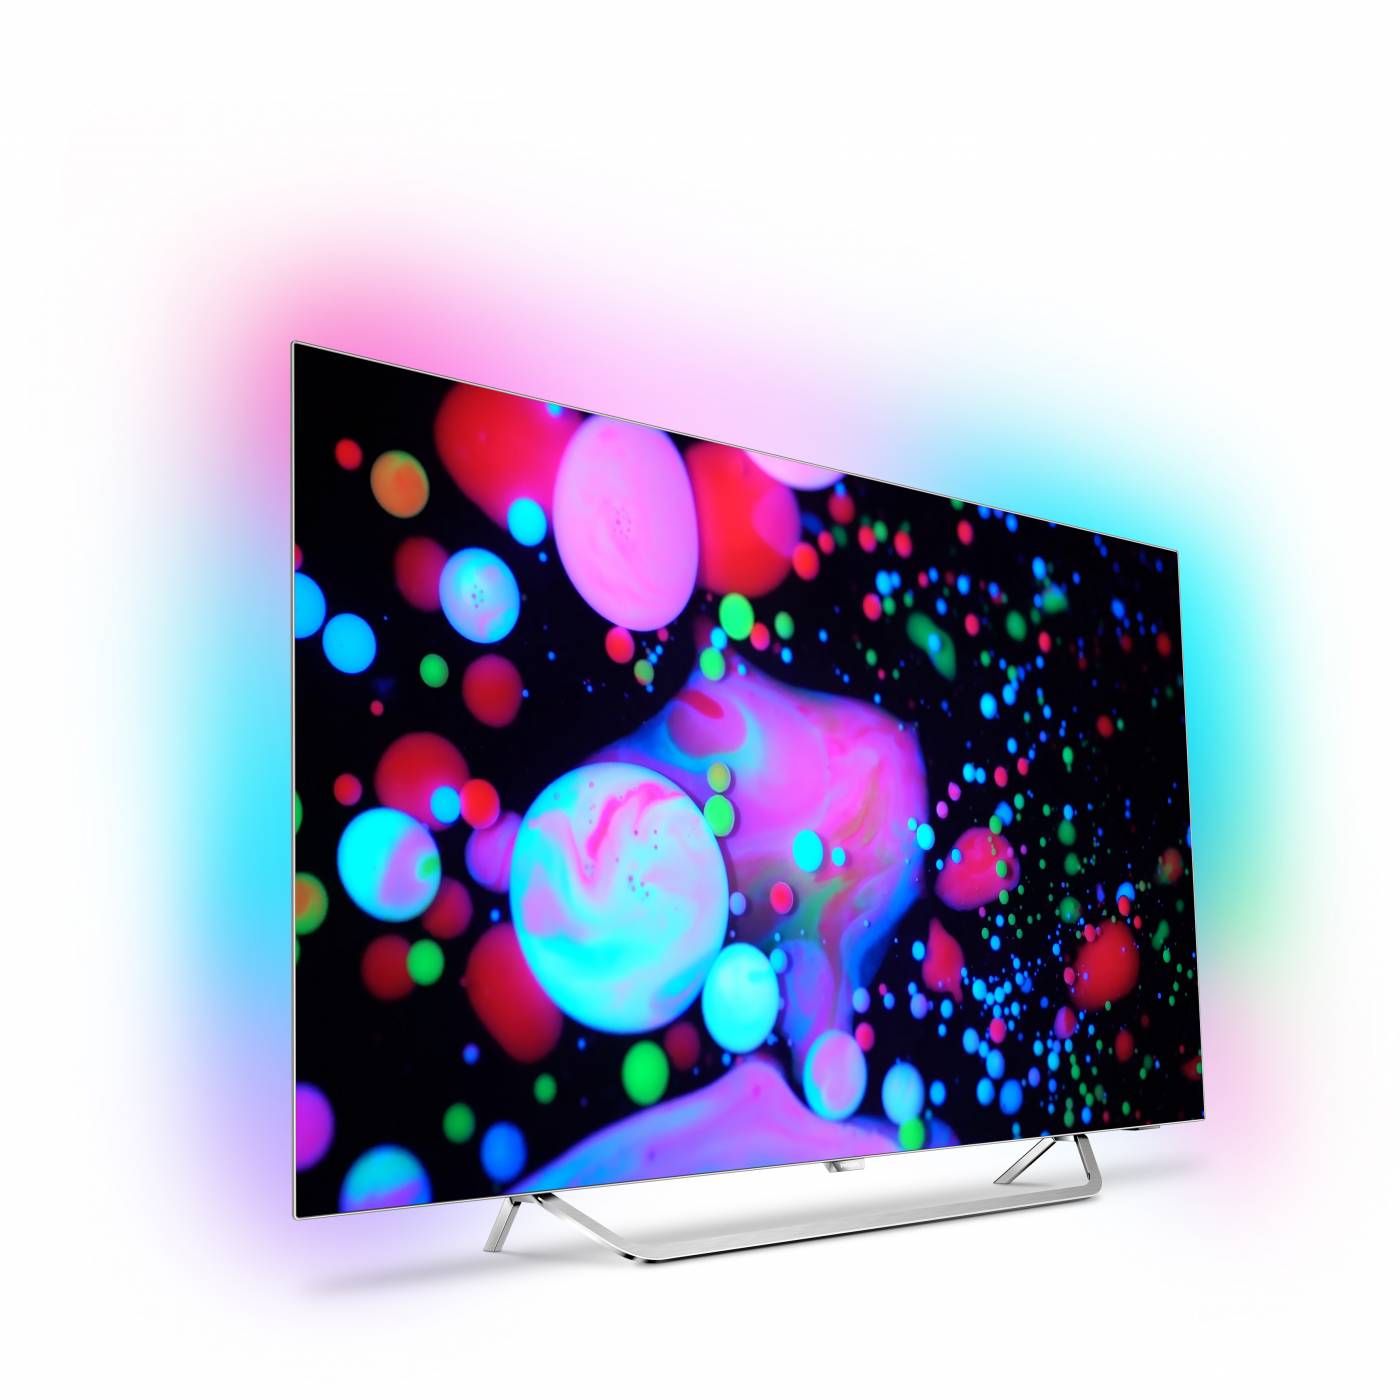 Новите телевизори Philips у нас – Ambilight, Android TV и OLED модели